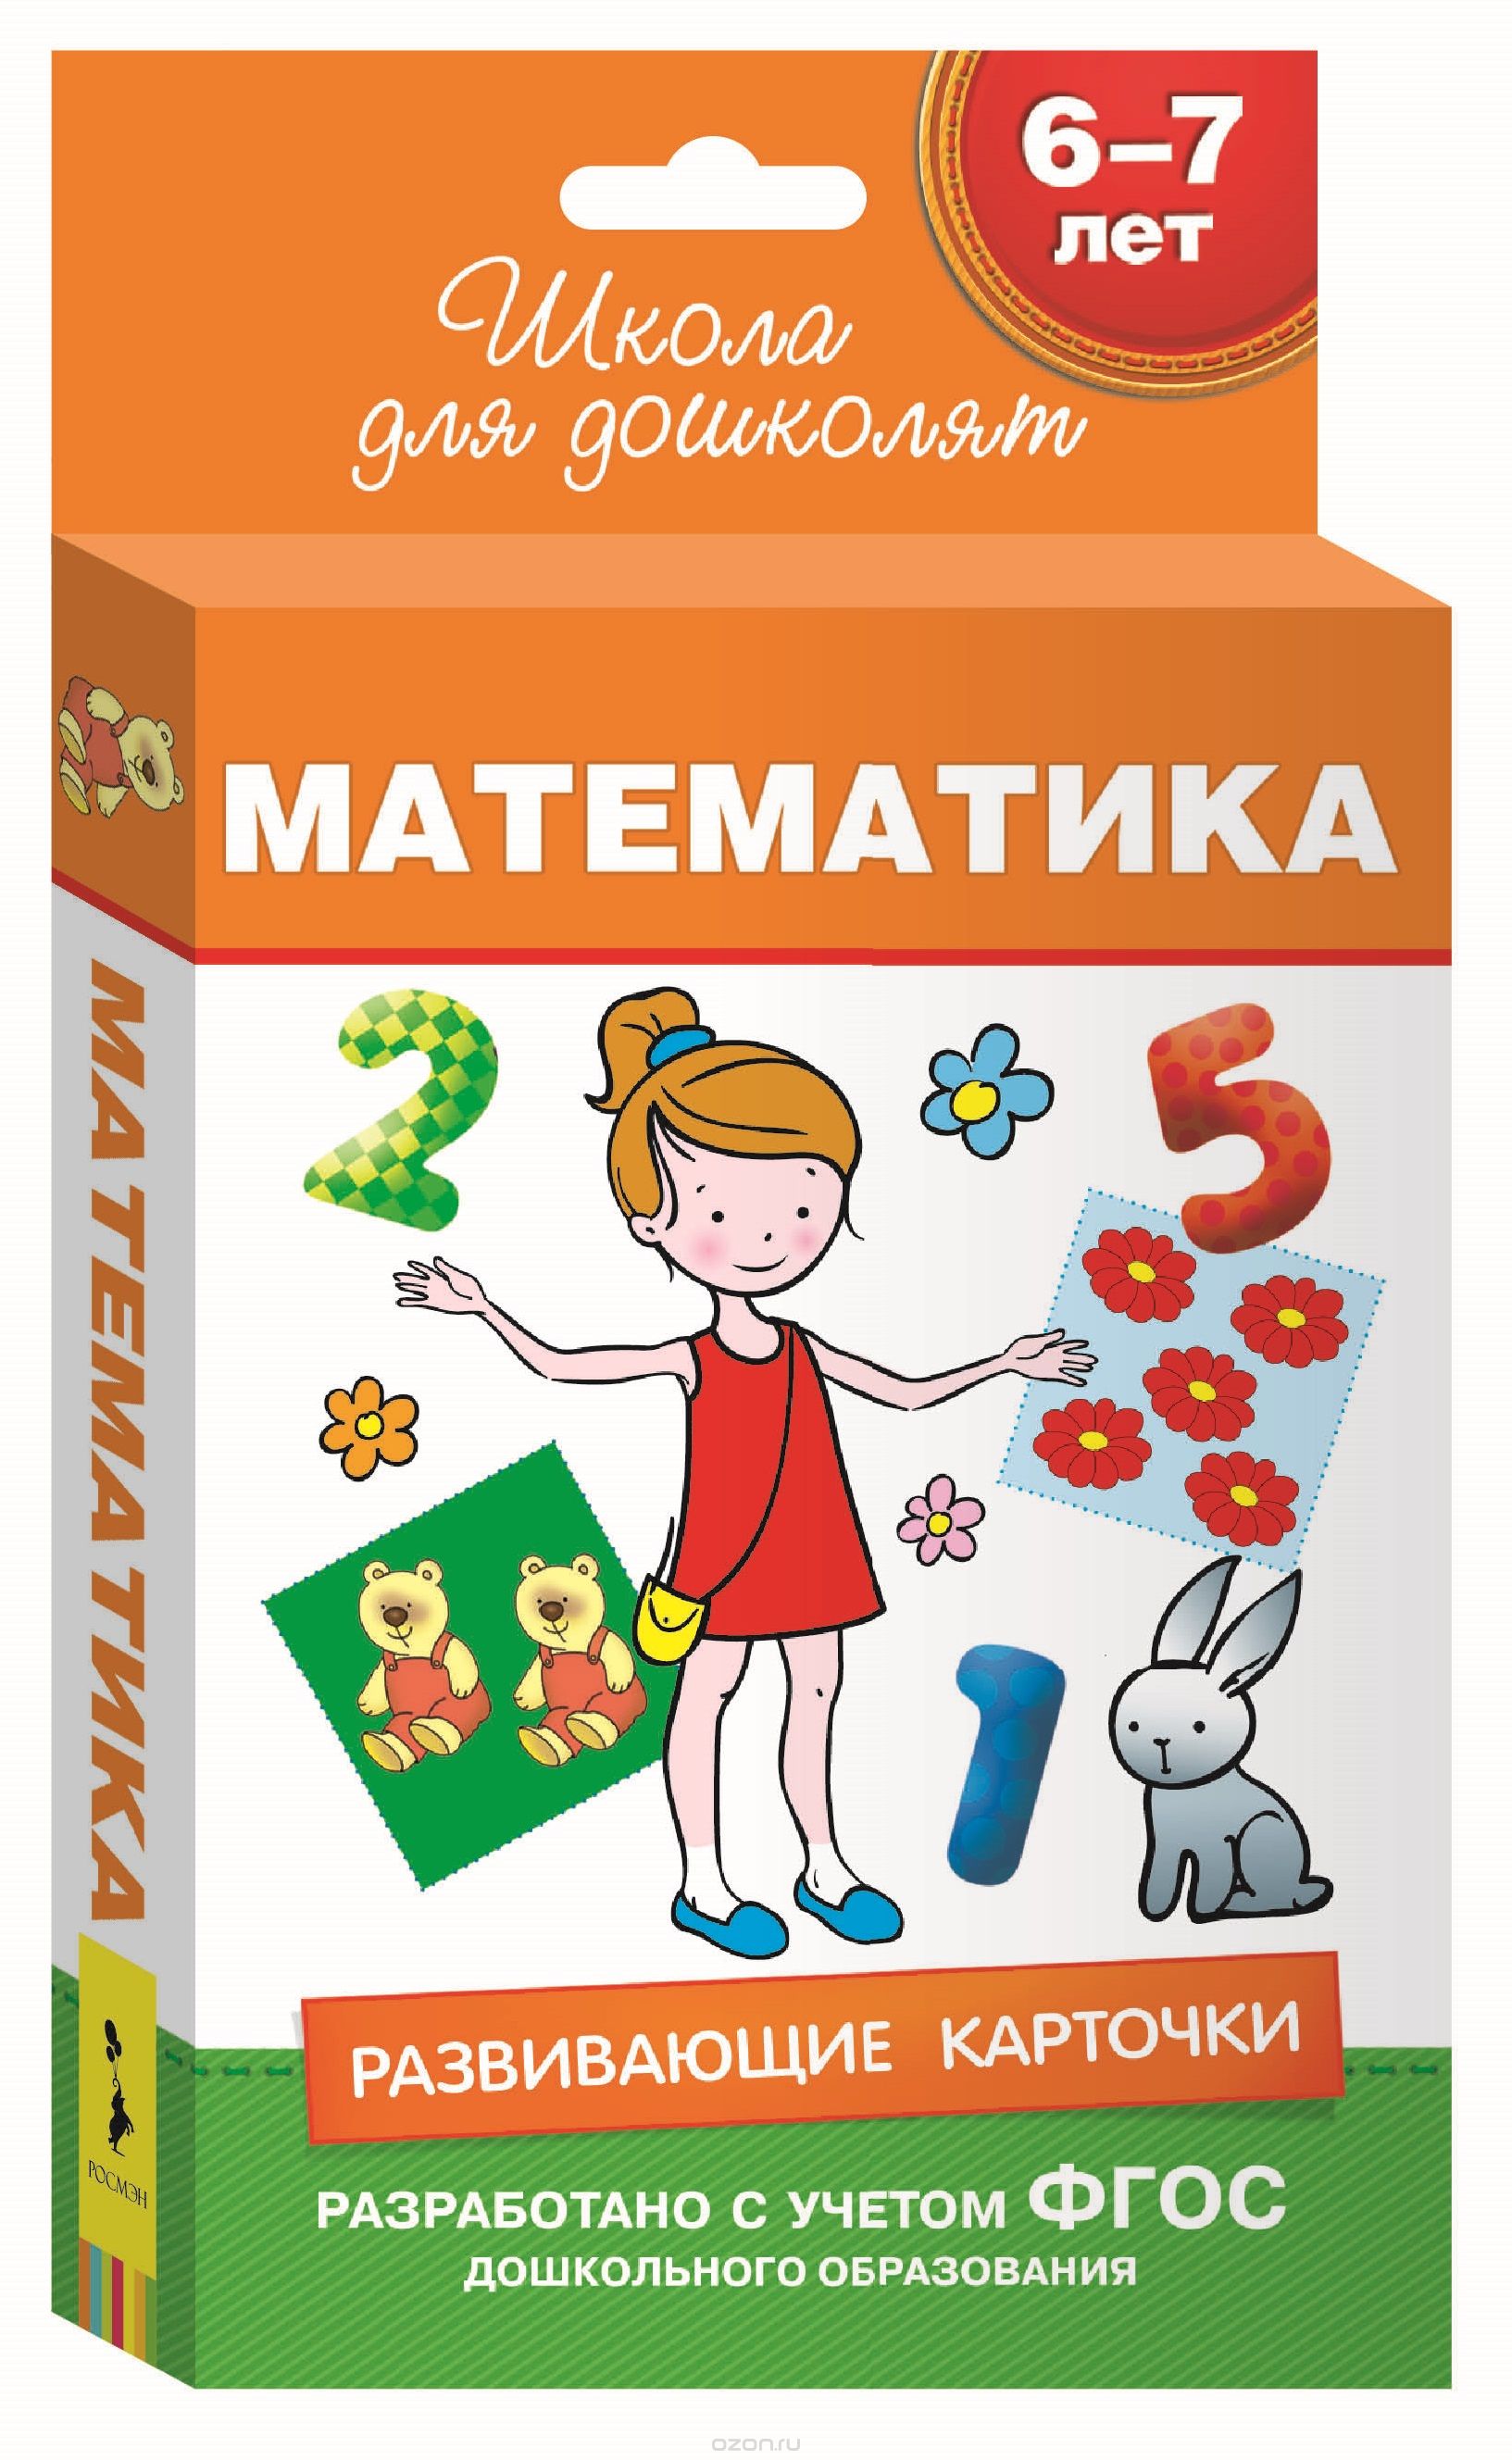 Скачать книгу "Математика. Развивающие карточки для детей 6-7 лет (набор из 36 карточек)"